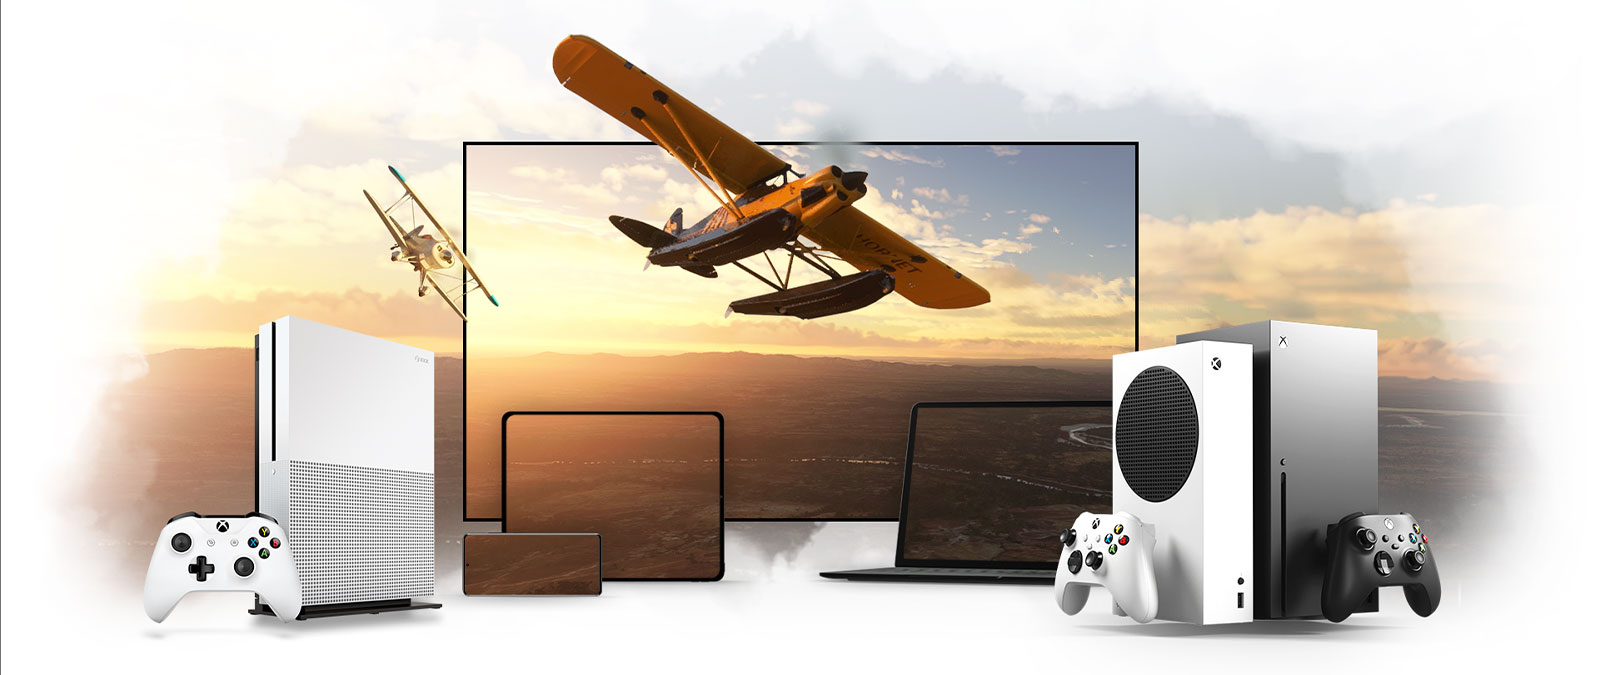 テレビ、Xbox One、Xbox Series X などのデバイスのラインアップ、太陽に照らされた地平線から離れて飛ぶプロペラプレーン。